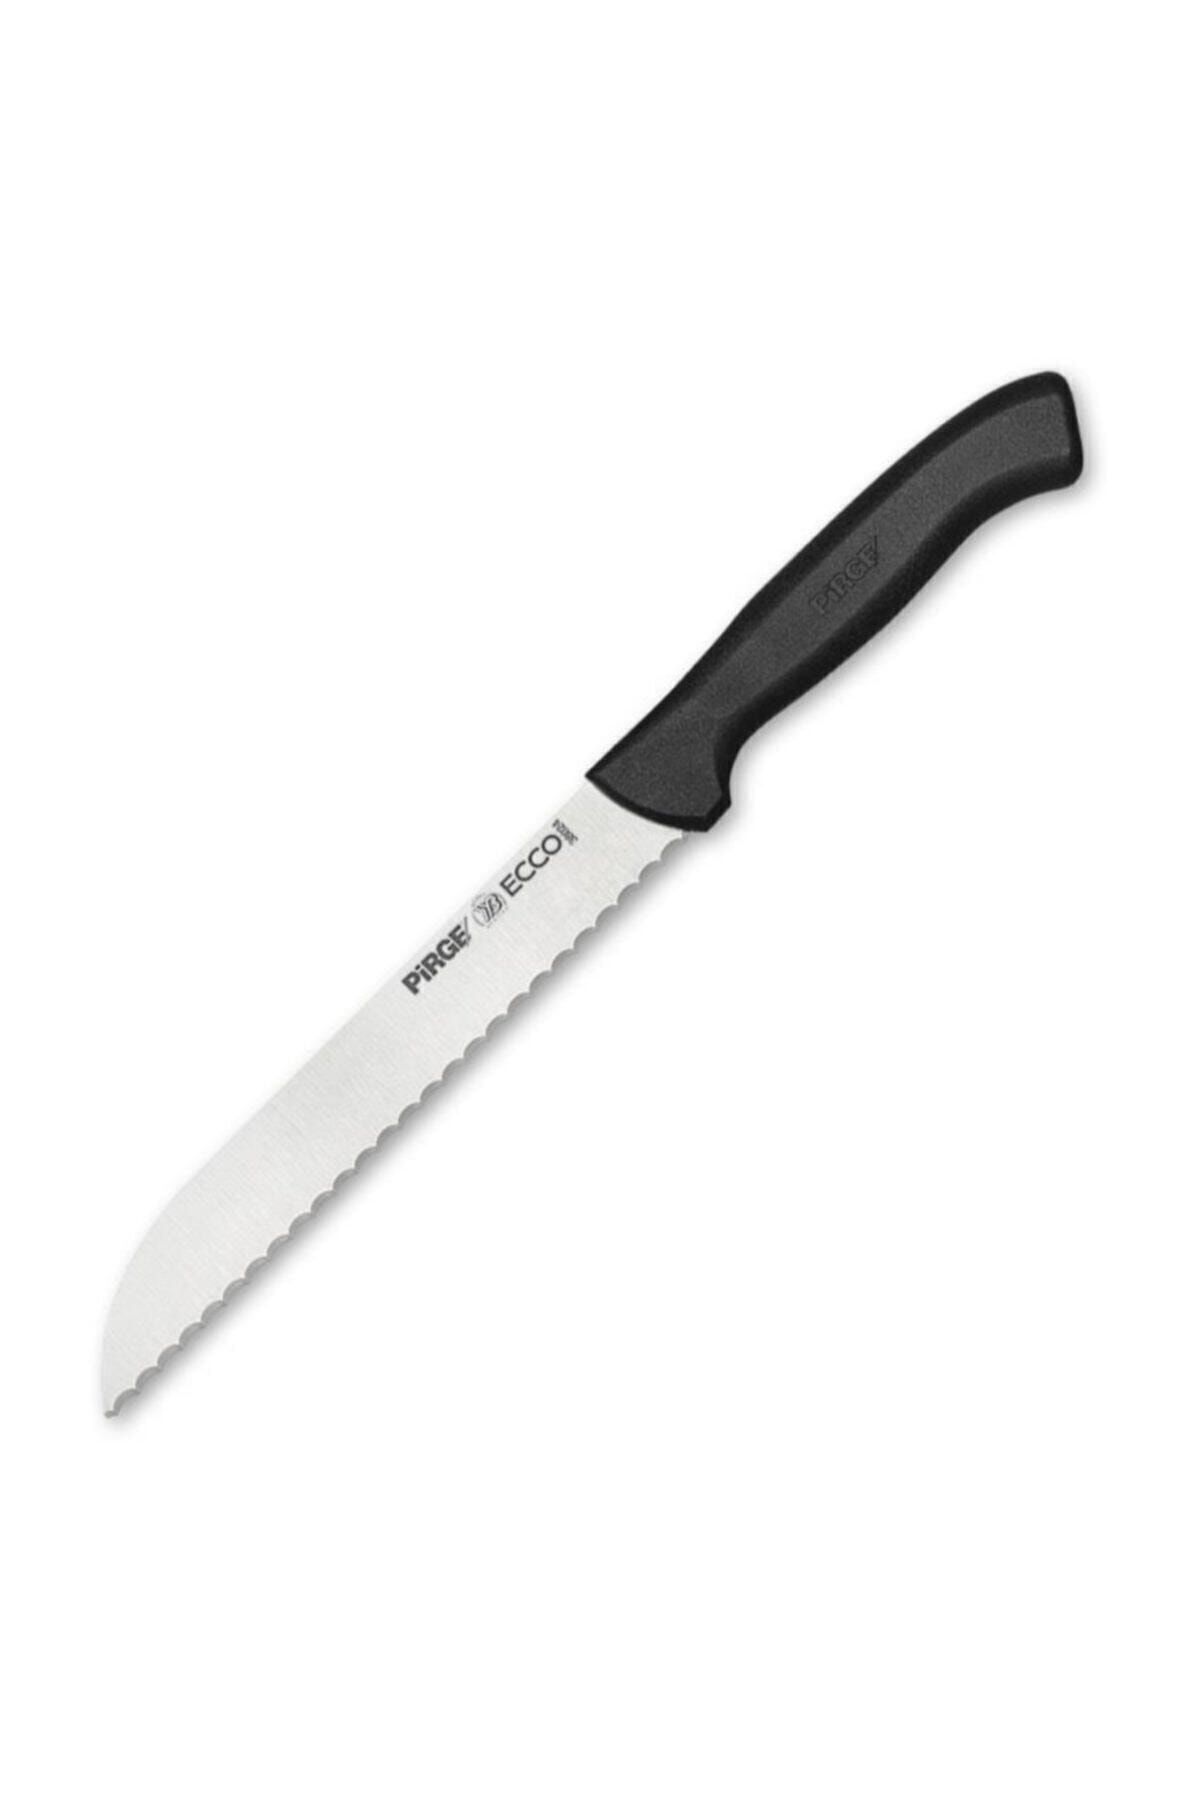 Pirge Beyaz Sap Ekmek Bıçağı Pro 17,5cm 38024